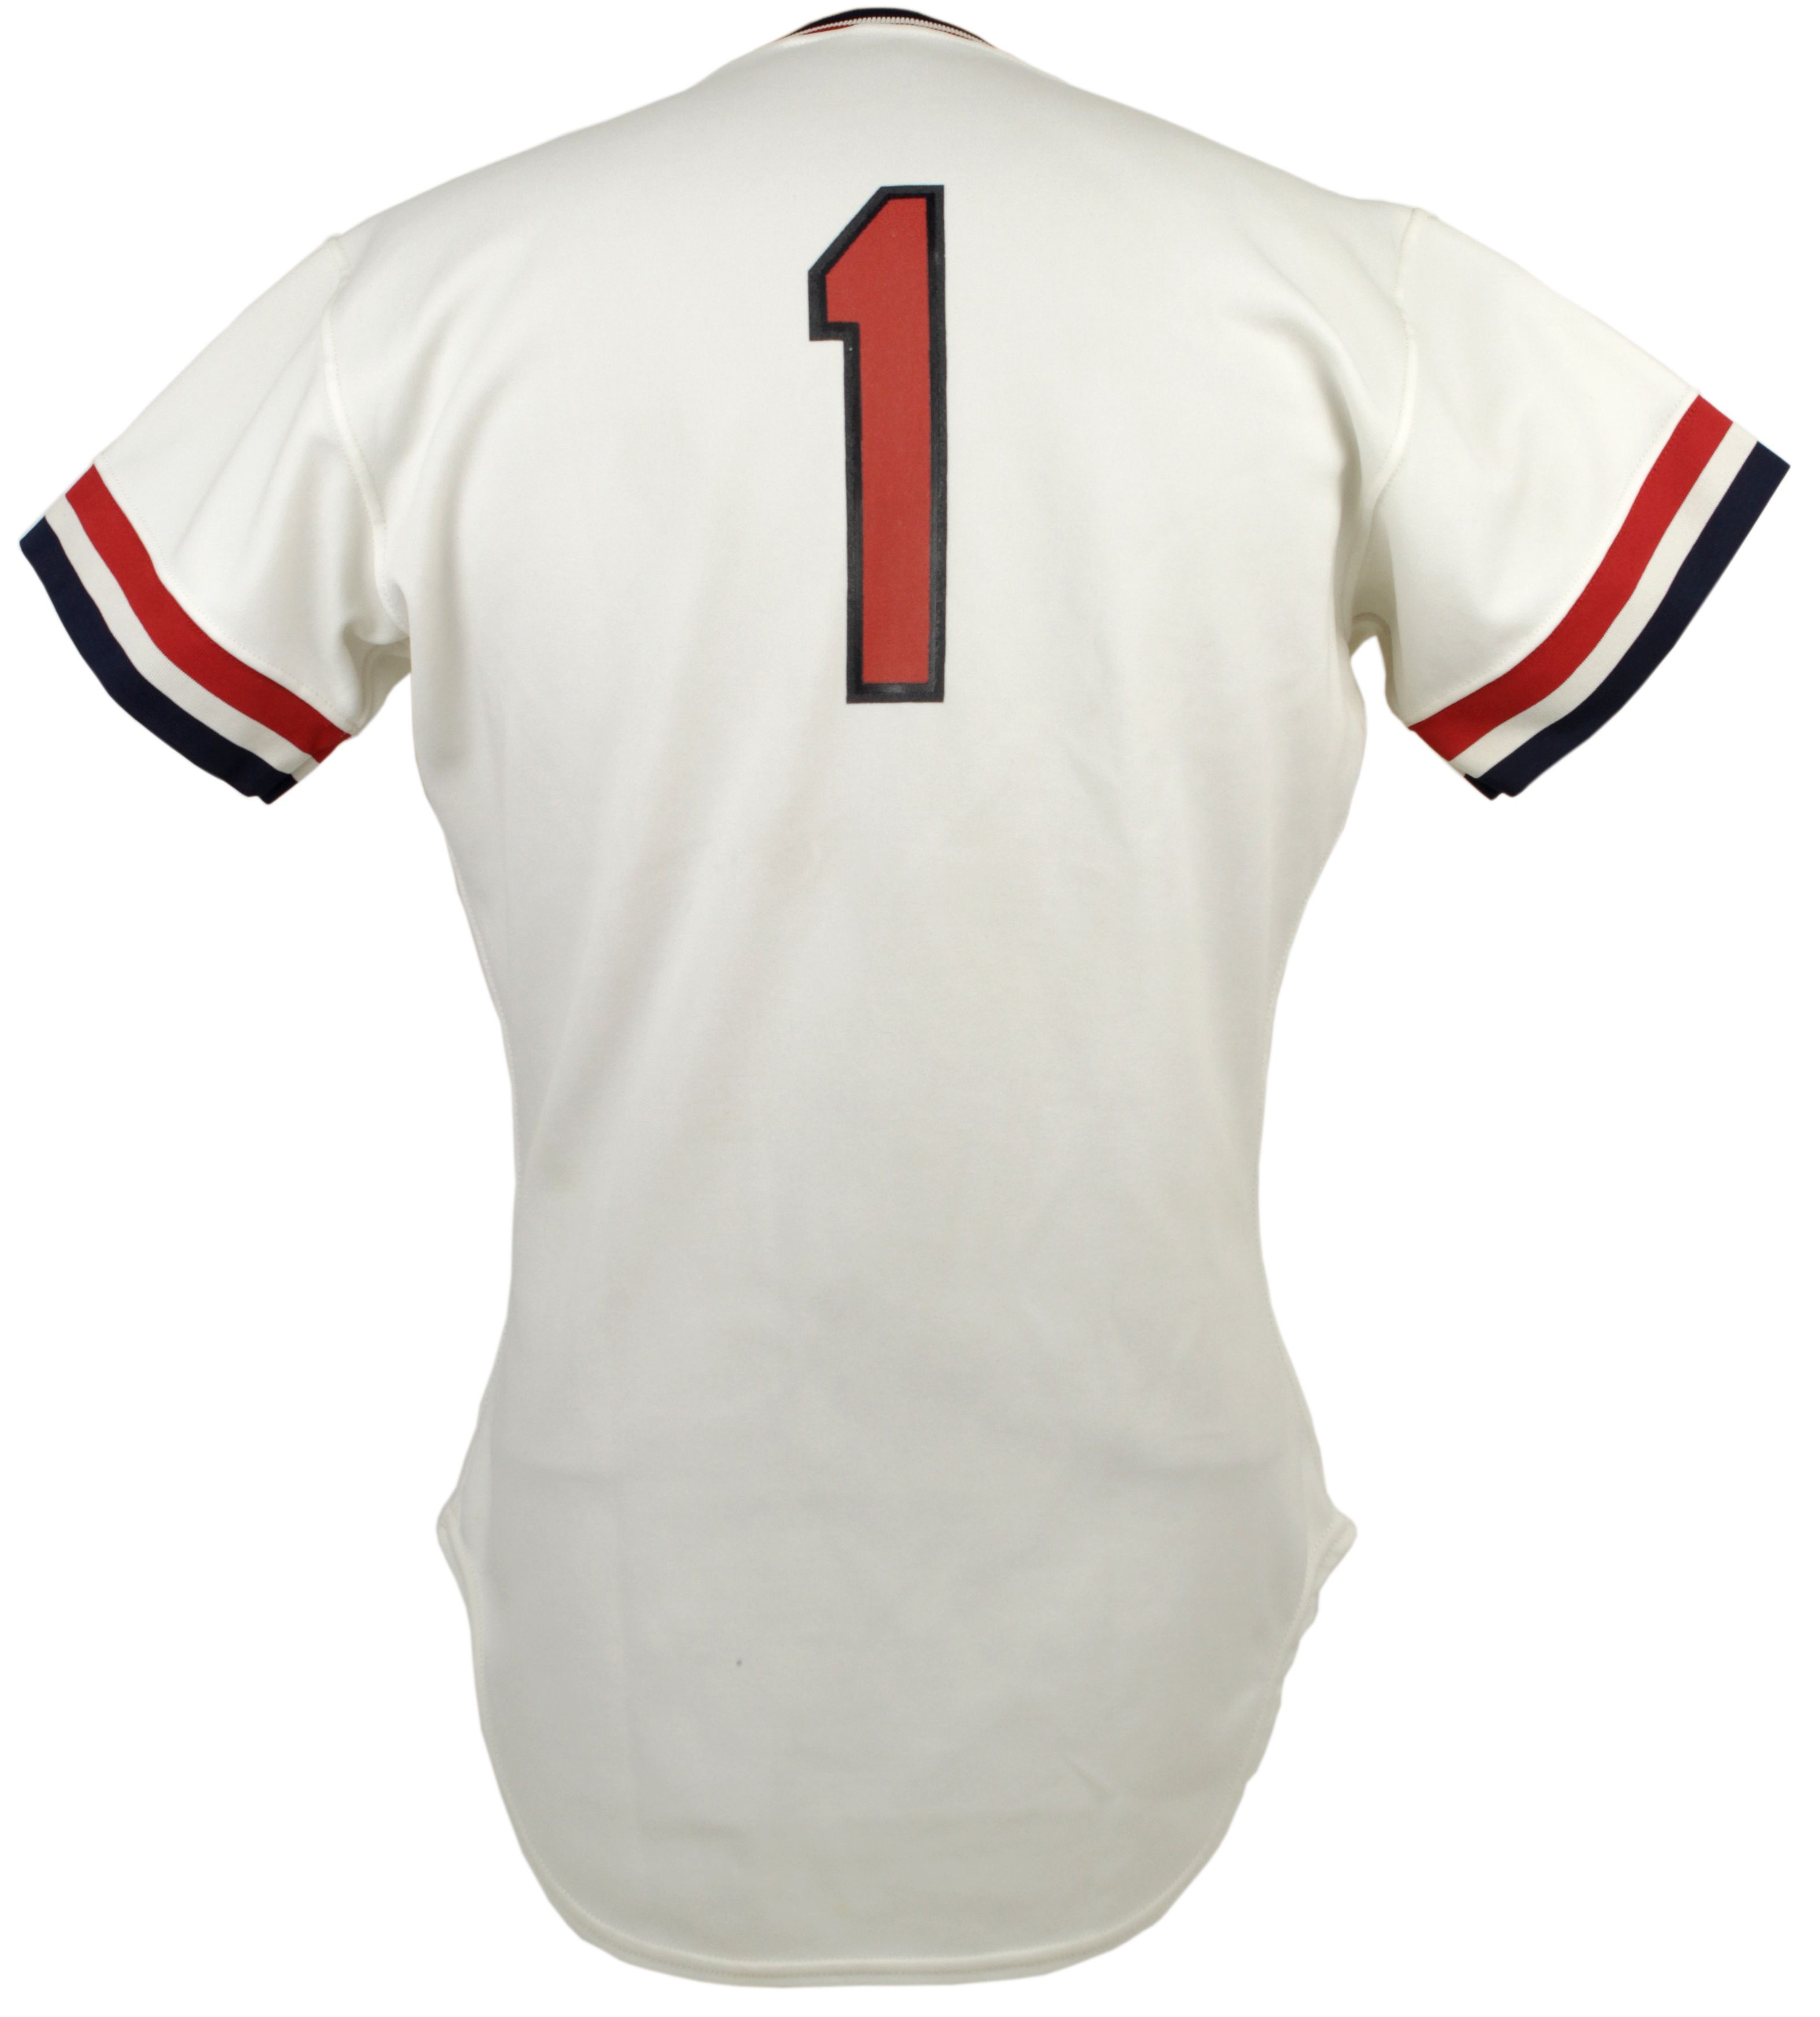 1985 cardinals jersey